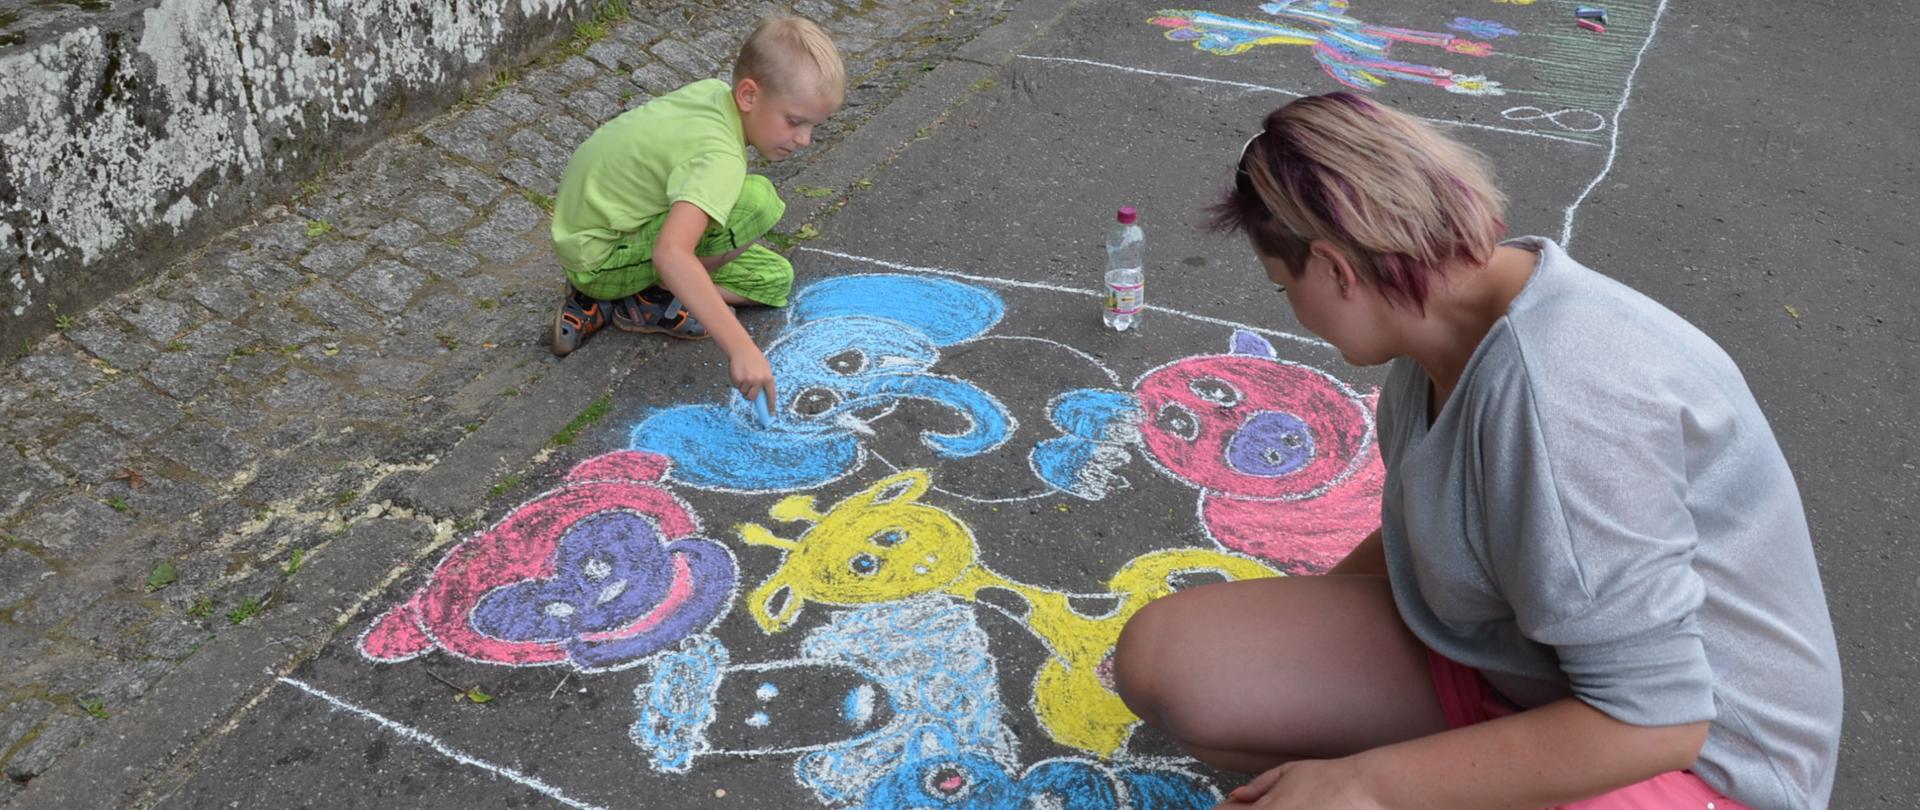 Dziecko i dorosła kobieta malują kolorowa kredą po asfalcie